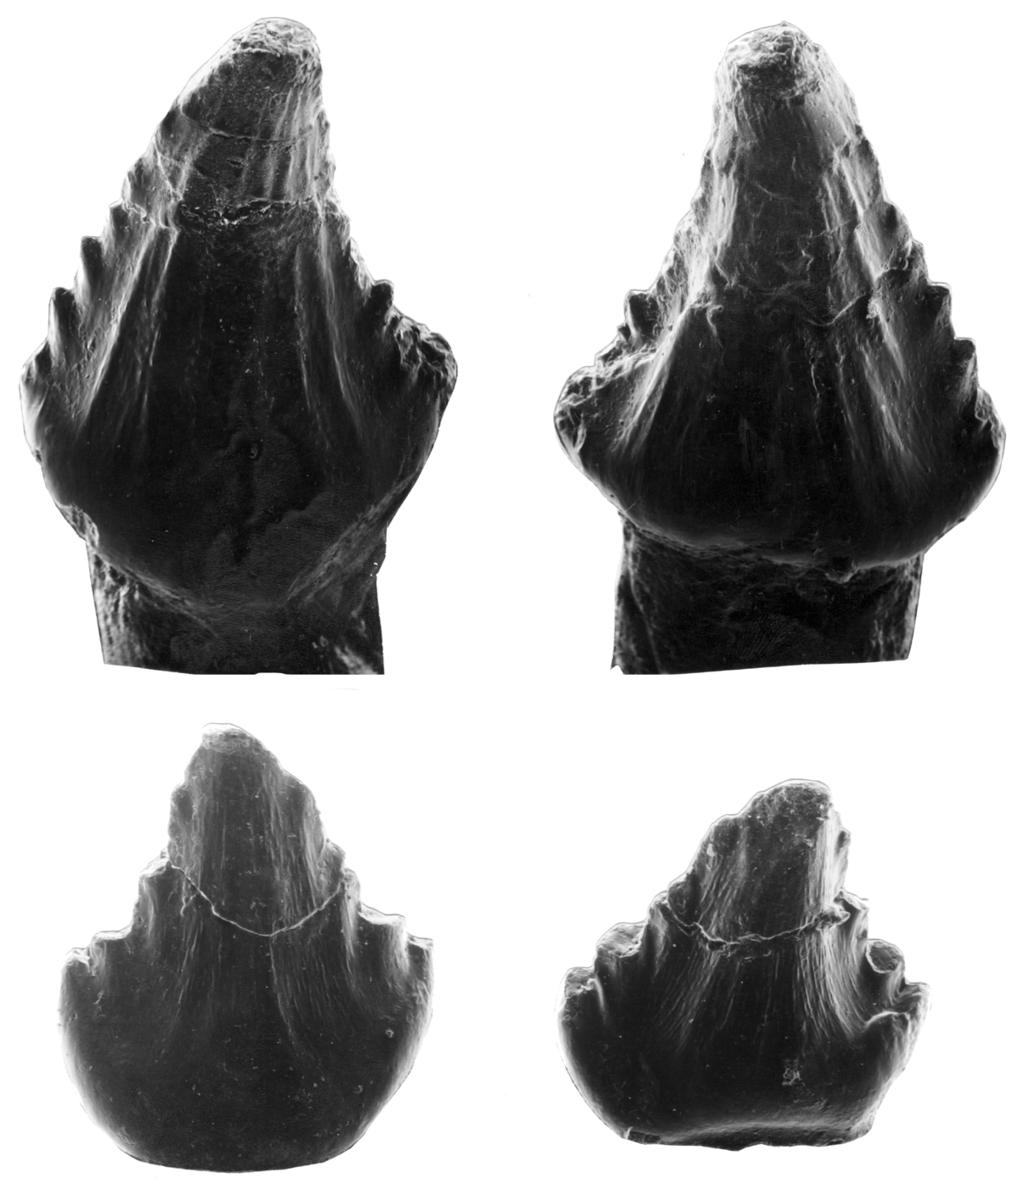 Barrett y Sánchez-Villagra gieren que estos restos fósiles aunque tienen un parentesco cercano al Lesothosaurus de África, no pertenecen a este género.